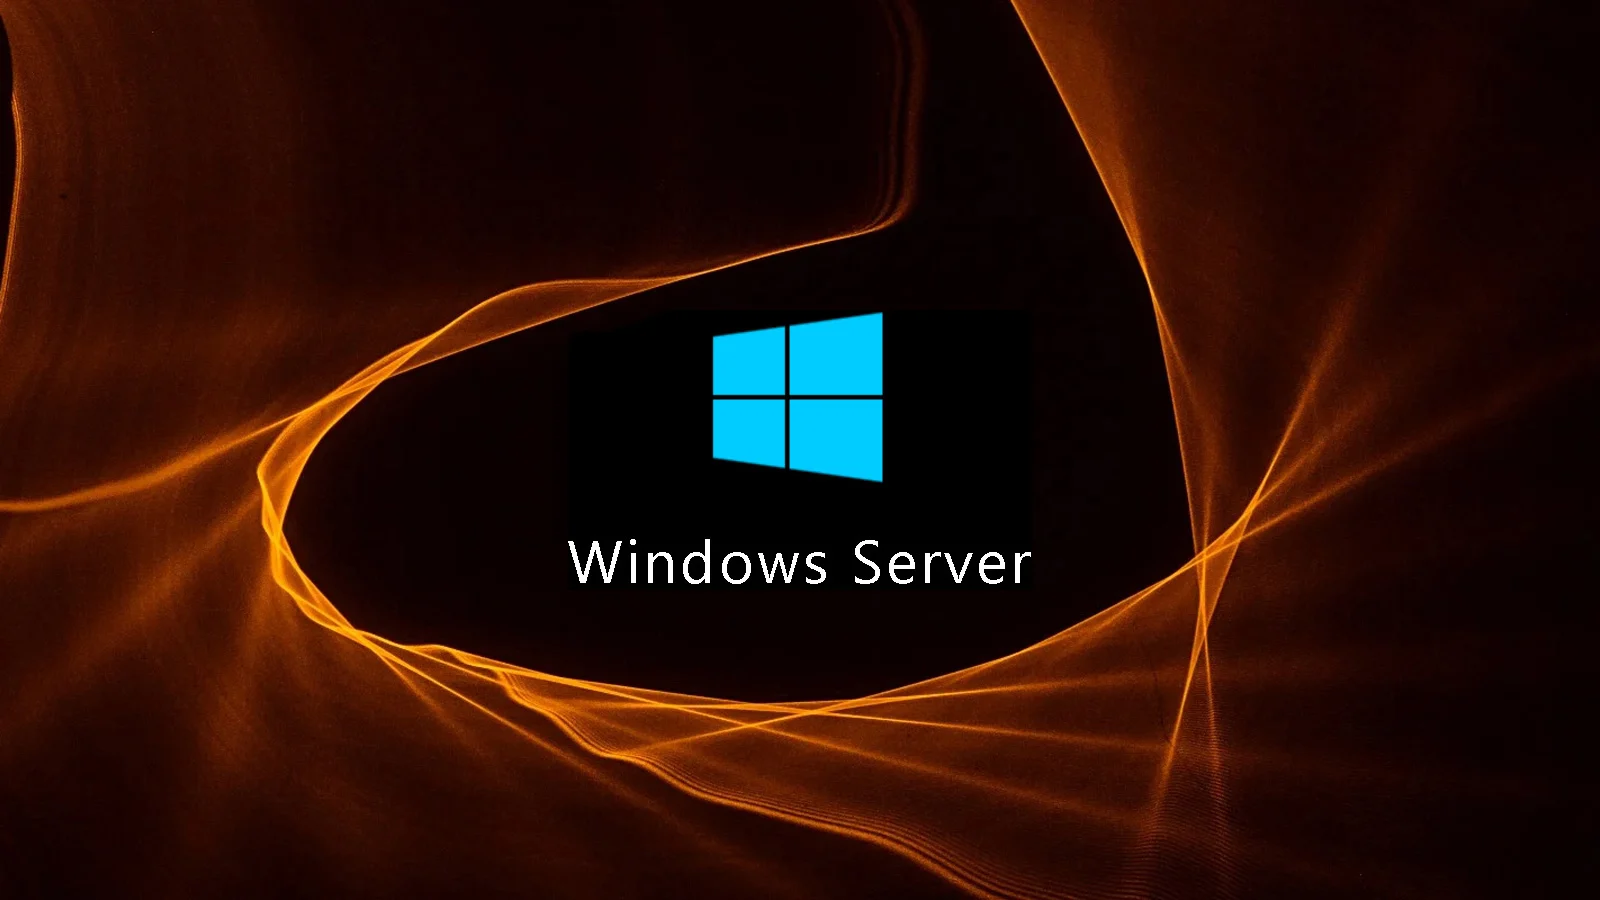 Windows Server 2019 ISO